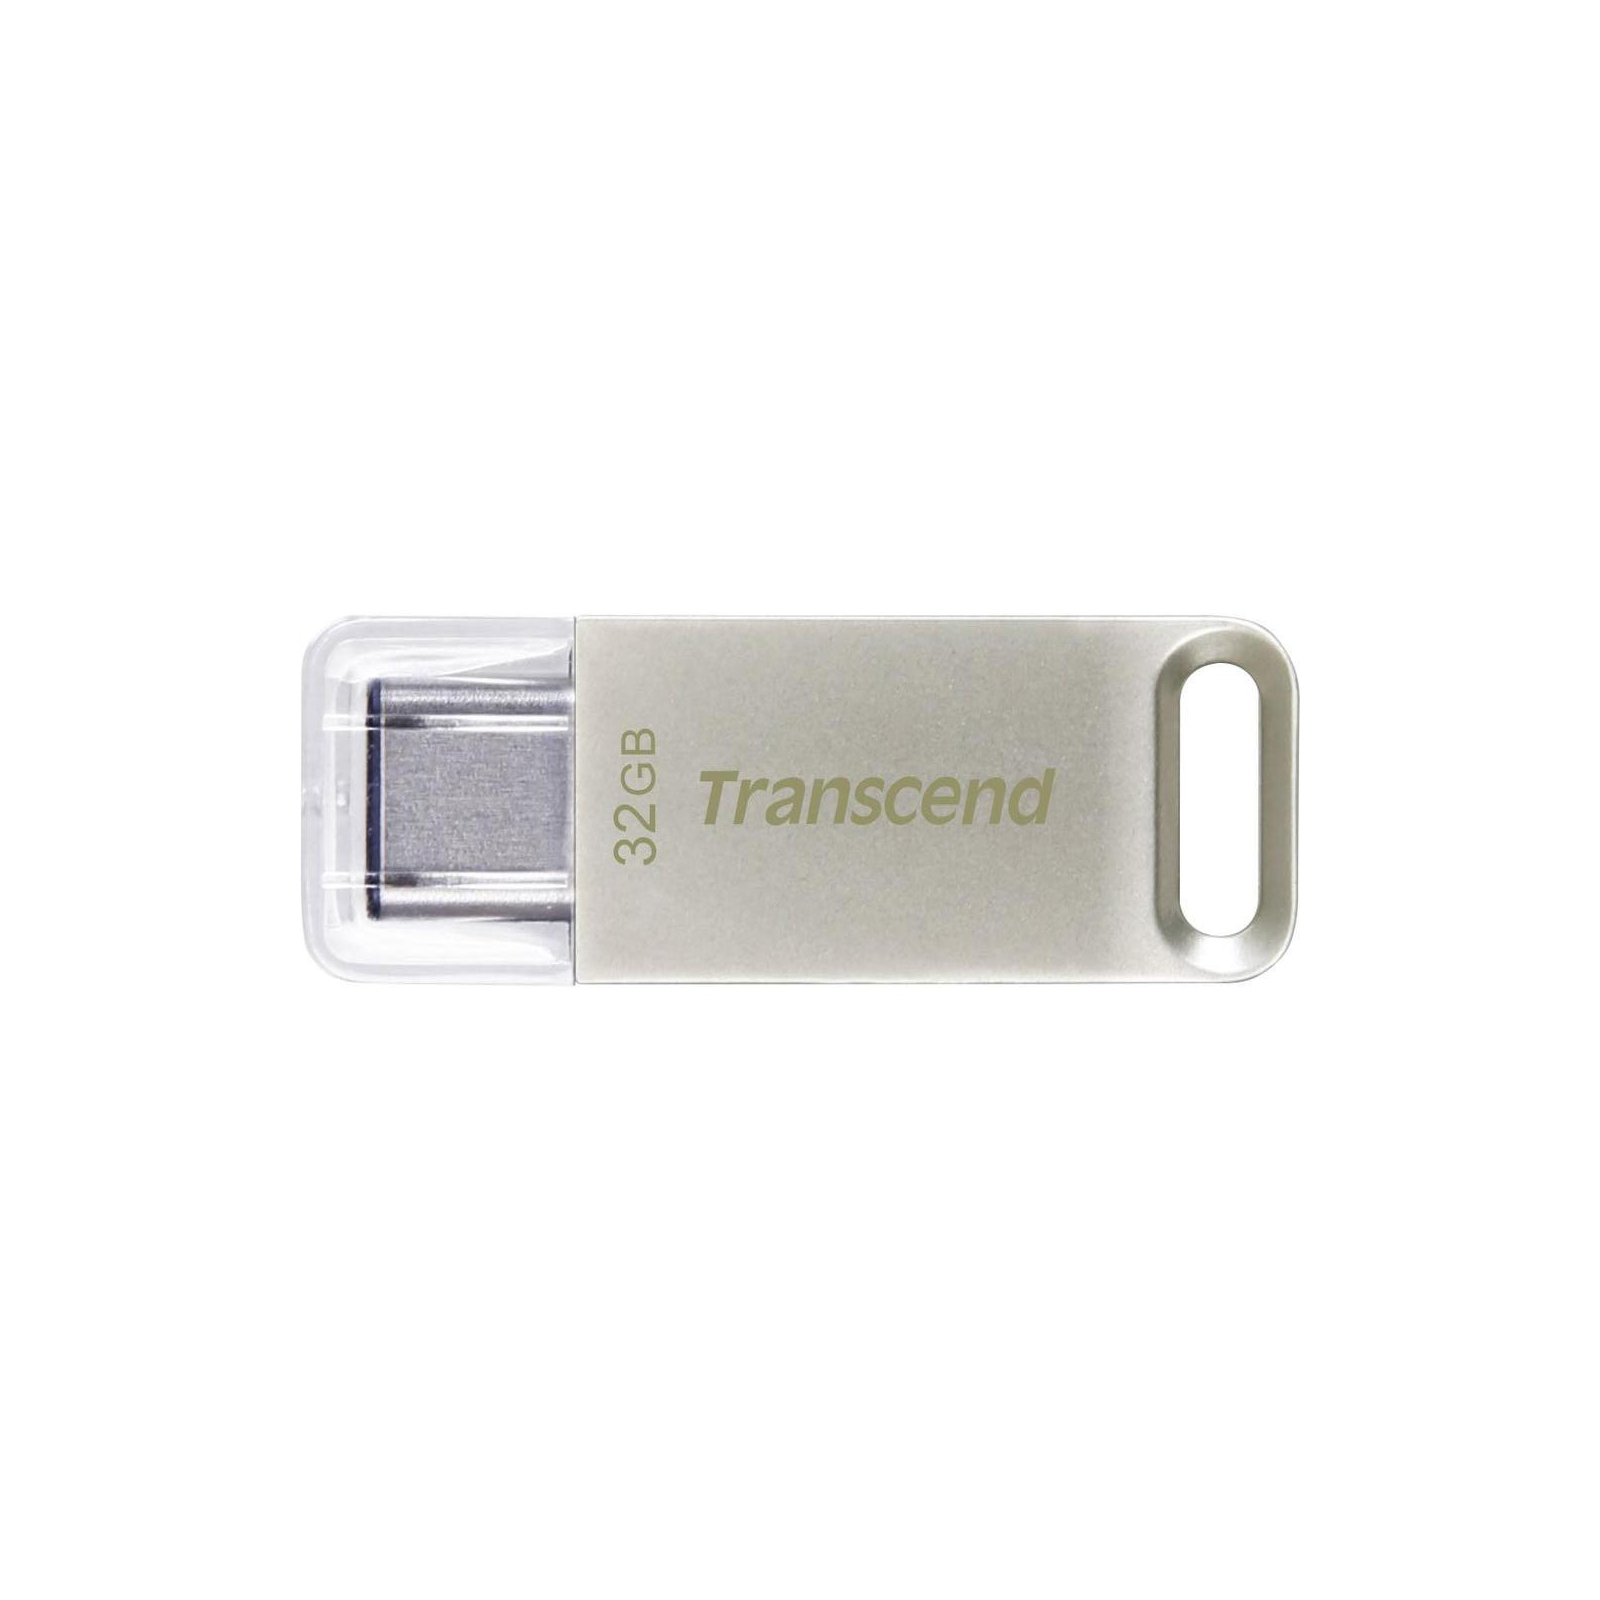 USB флеш накопичувач Transcend 32GB JetFlash 850 Silver USB 3.1 (TS32GJF850S)